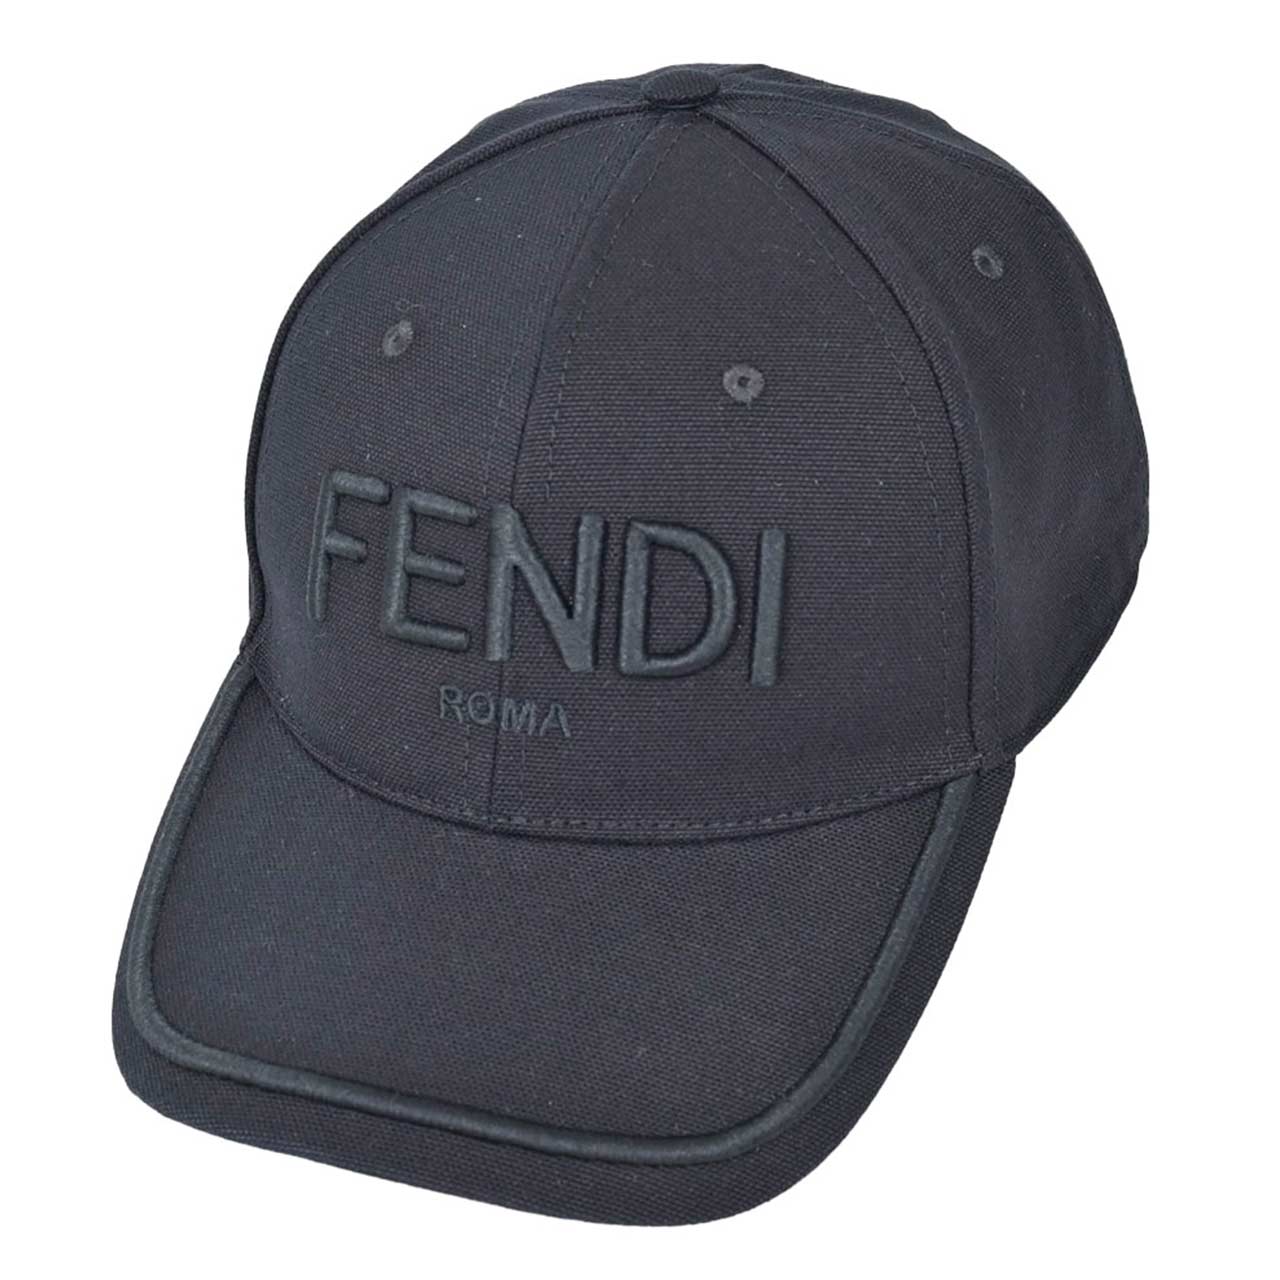 FENDI キャップ フェンディコンディション状態